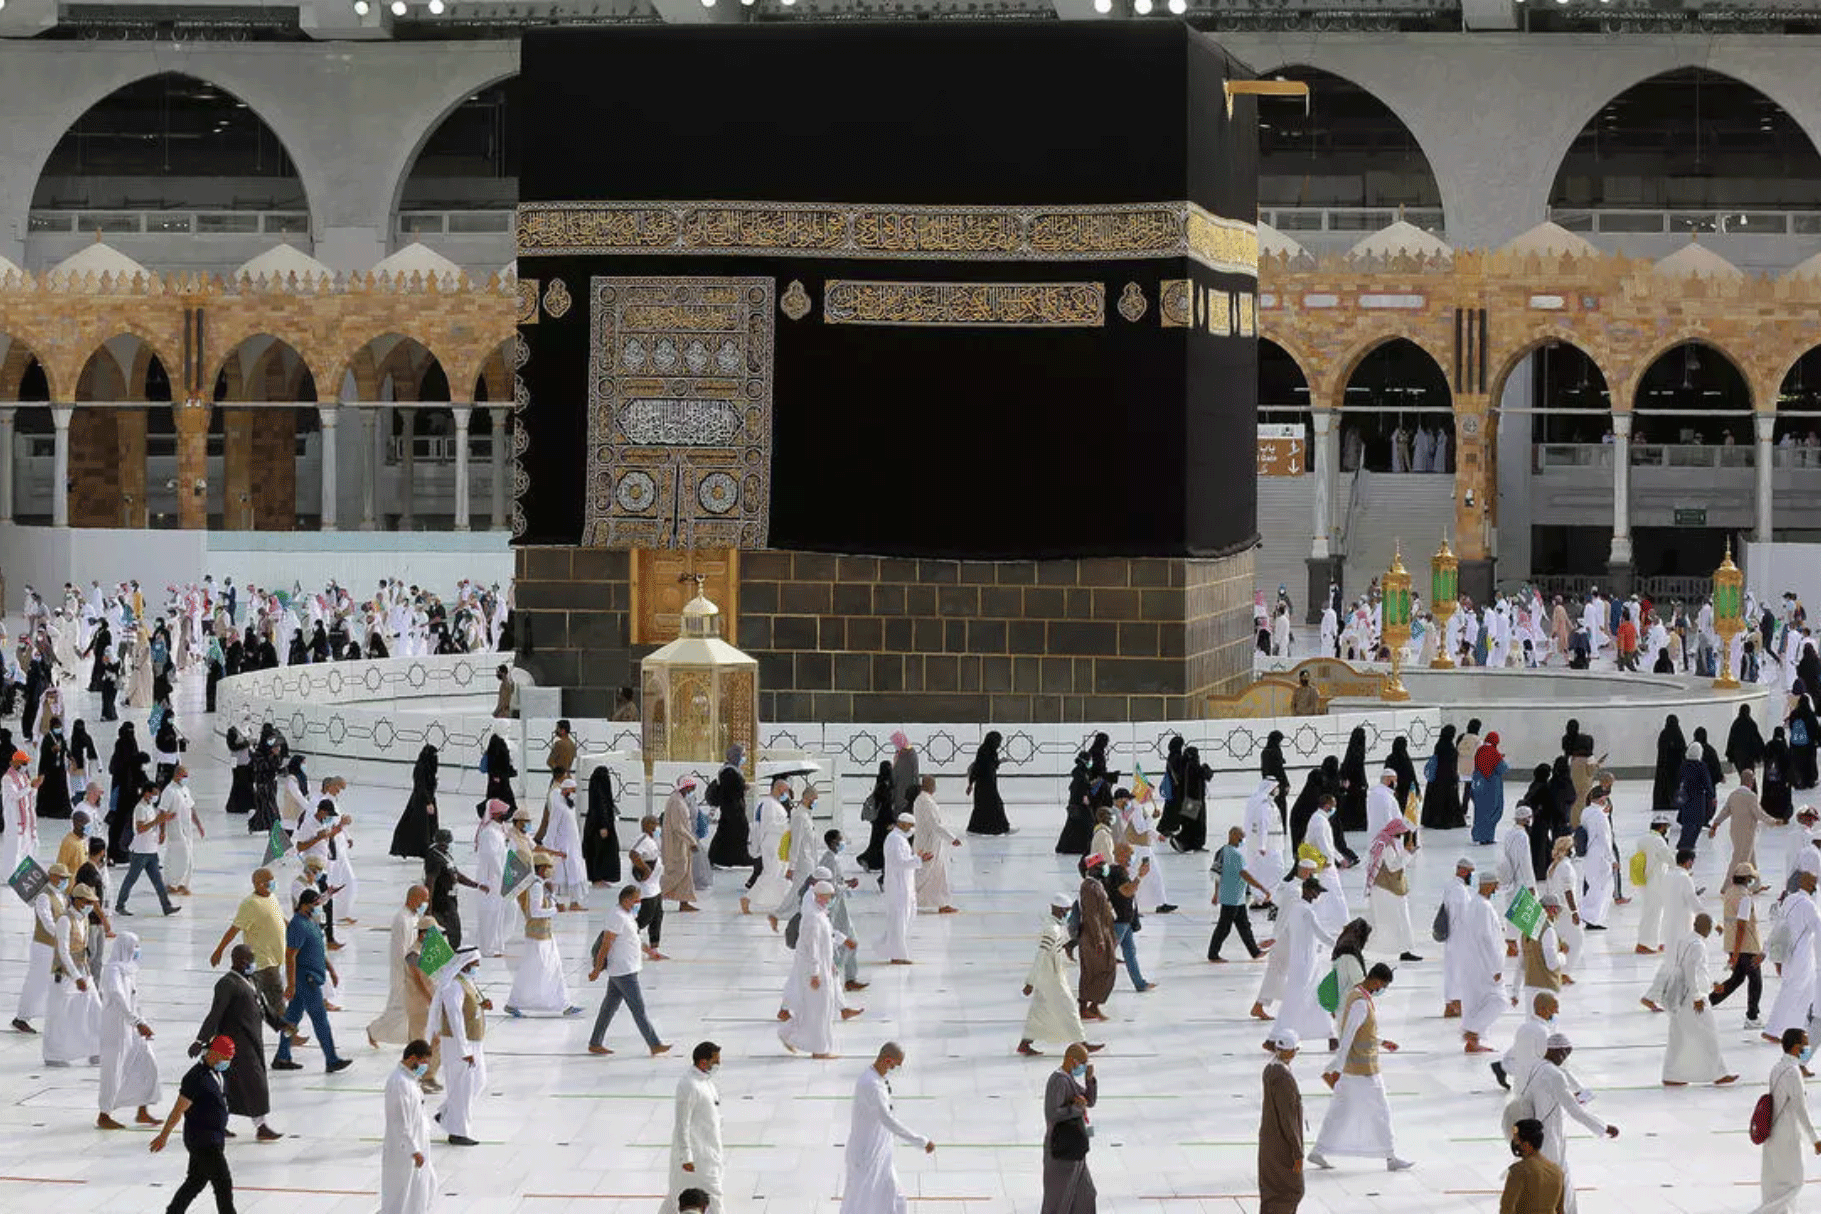 الحجاج حول الكعبة في مكة بتاريخ 2 أغسطس 2020